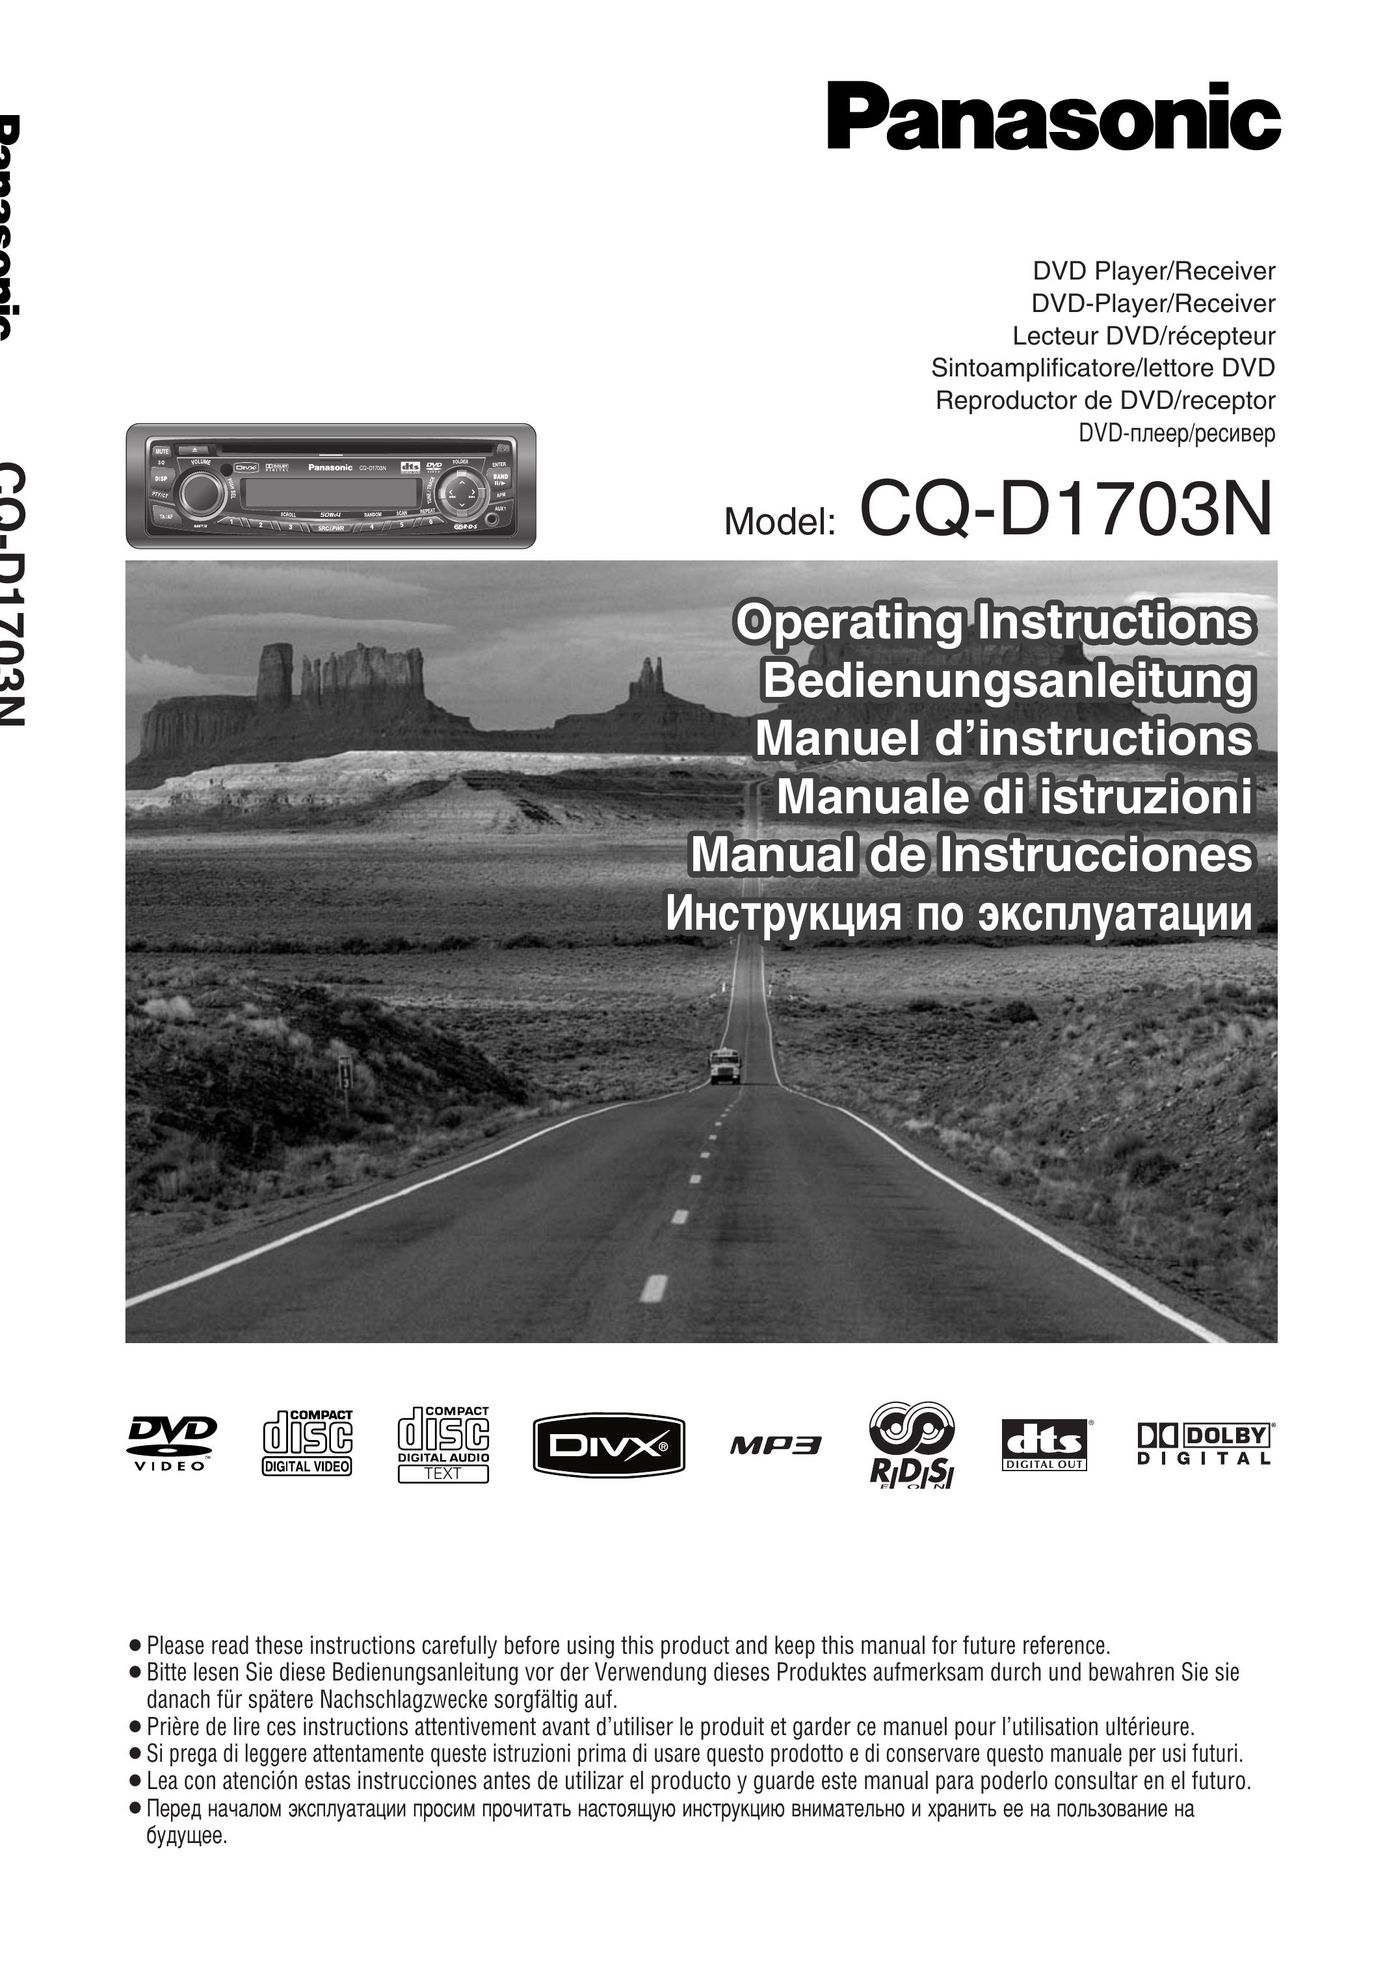 Panasonic CQ-D1703N DVD Player User Manual